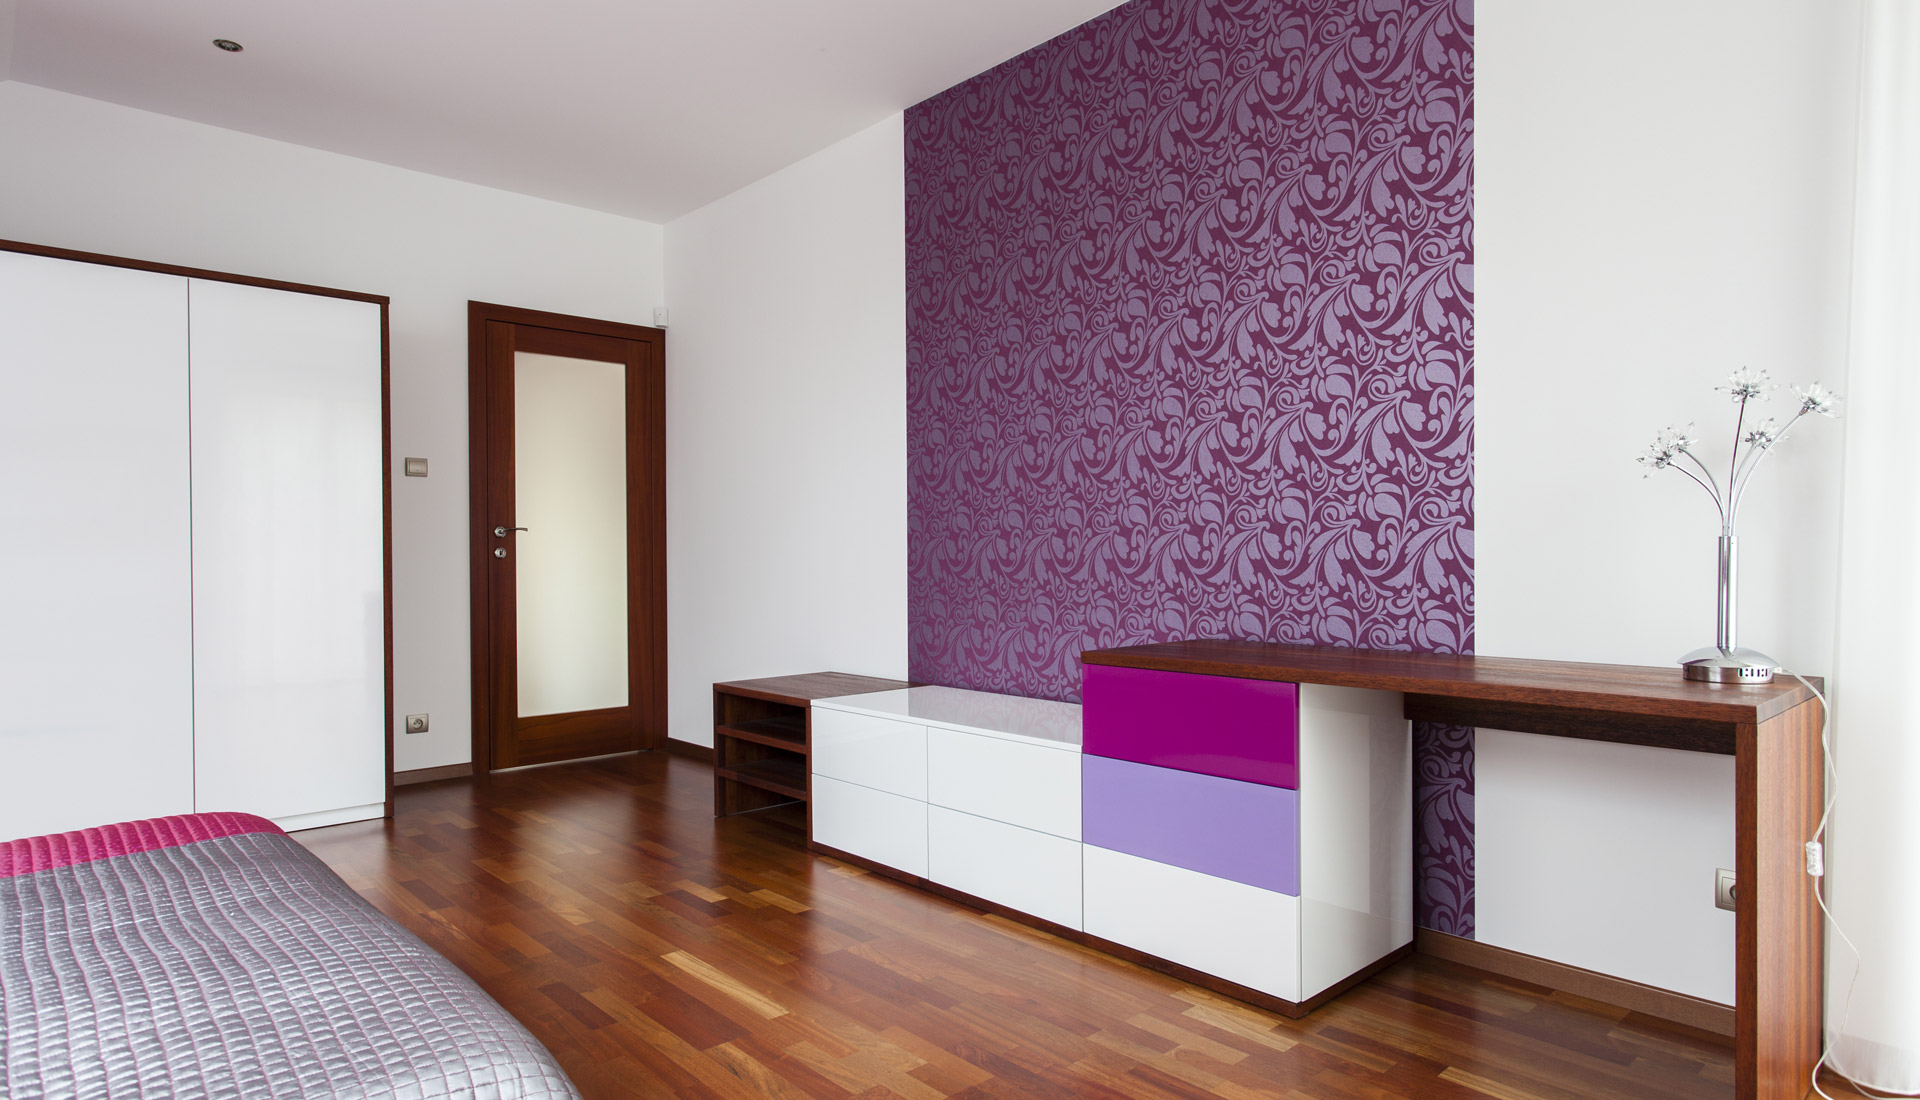 Сочетание обоев в интерьере по цвету: как подобрать отделку под мебель (фото)